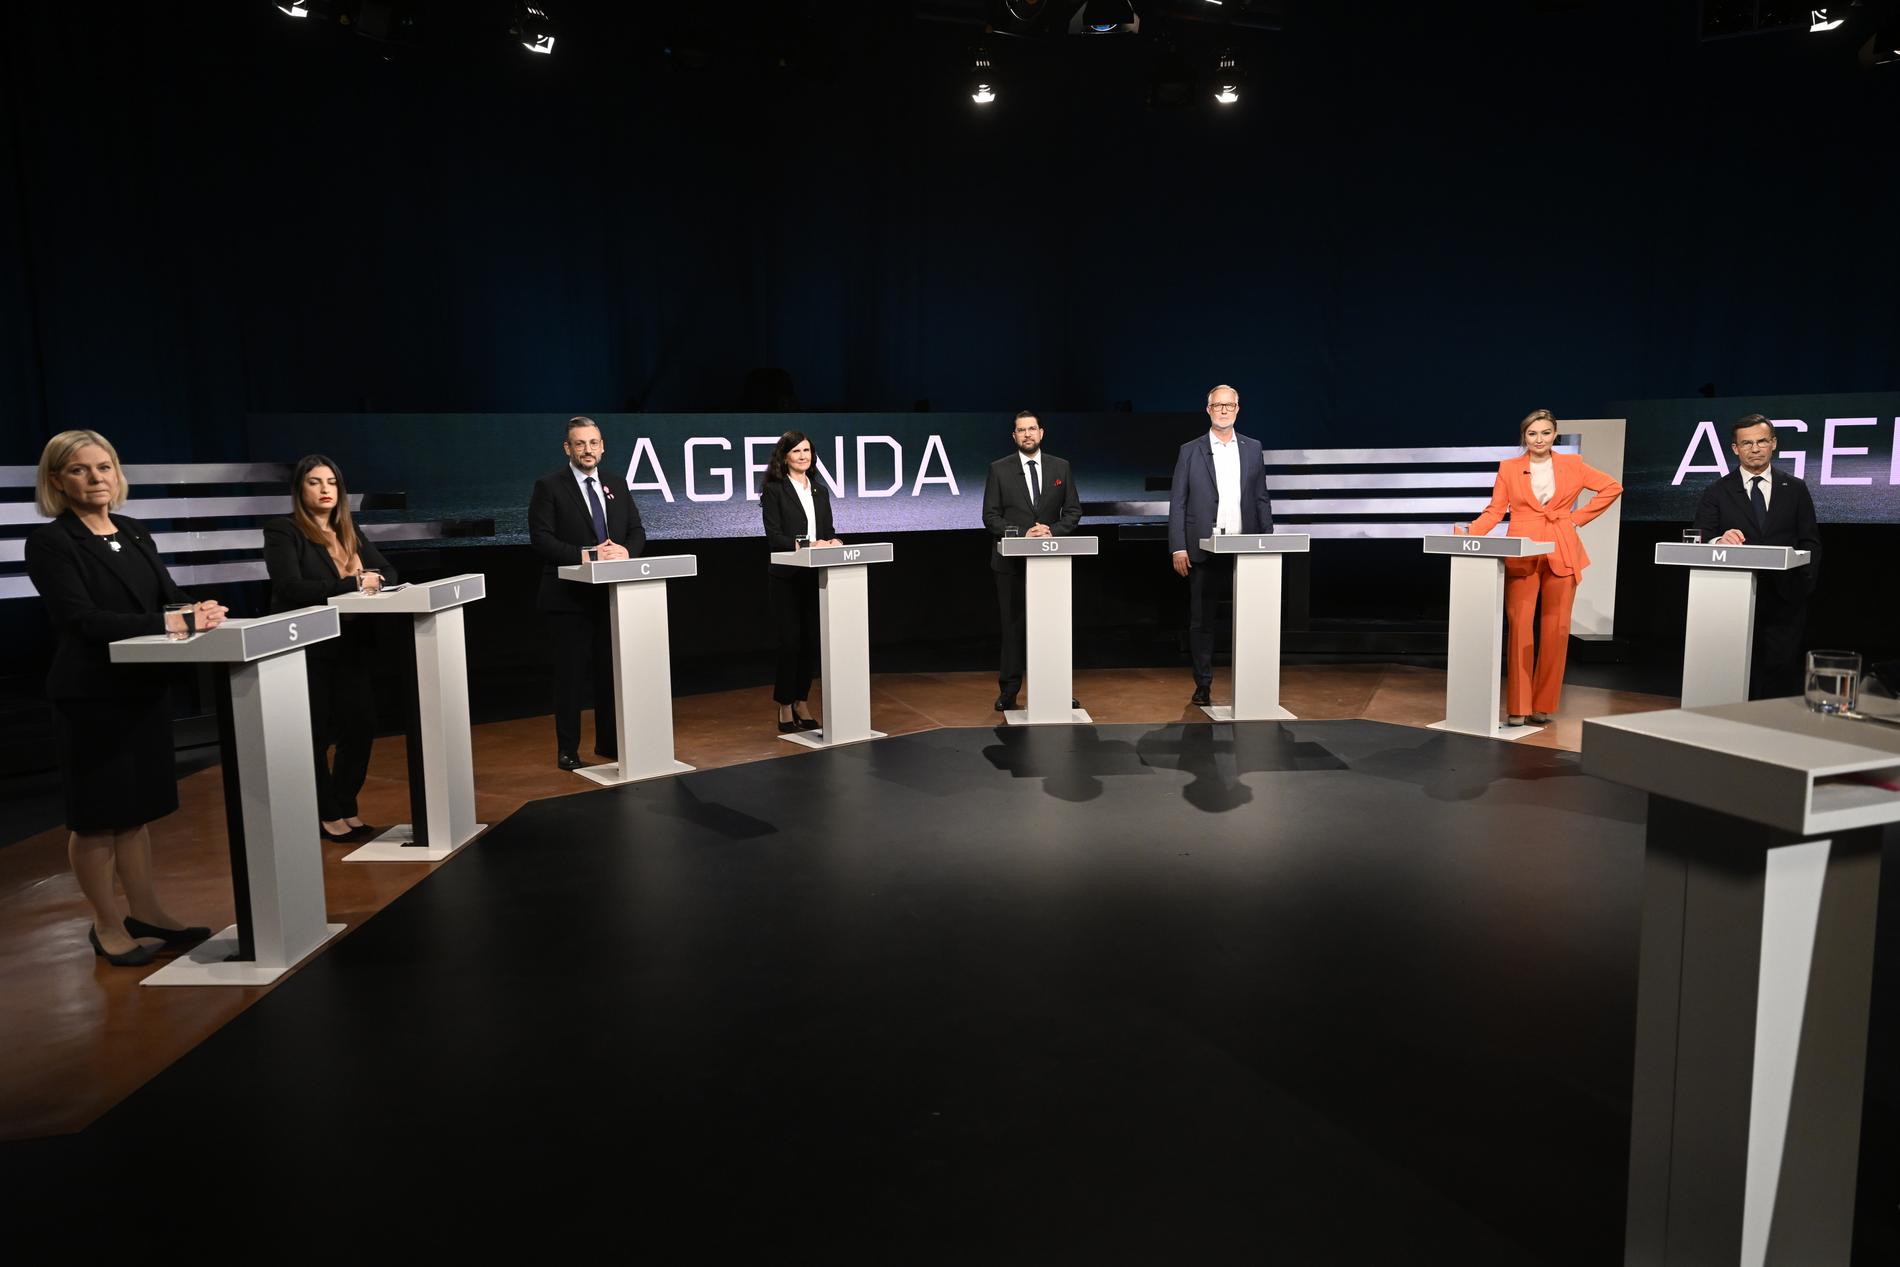 Magdalena Andersson (S), Nooshi Dadgostar (V), Muharrem Demirok (C), Märta Stenevi (MP), Jimmie Åkesson (SD), Johan Pehrson (L), Ebba Busch (KD) och statsminister Ulf Kristersson (M) i studion under SVT:s partiledardebatt.